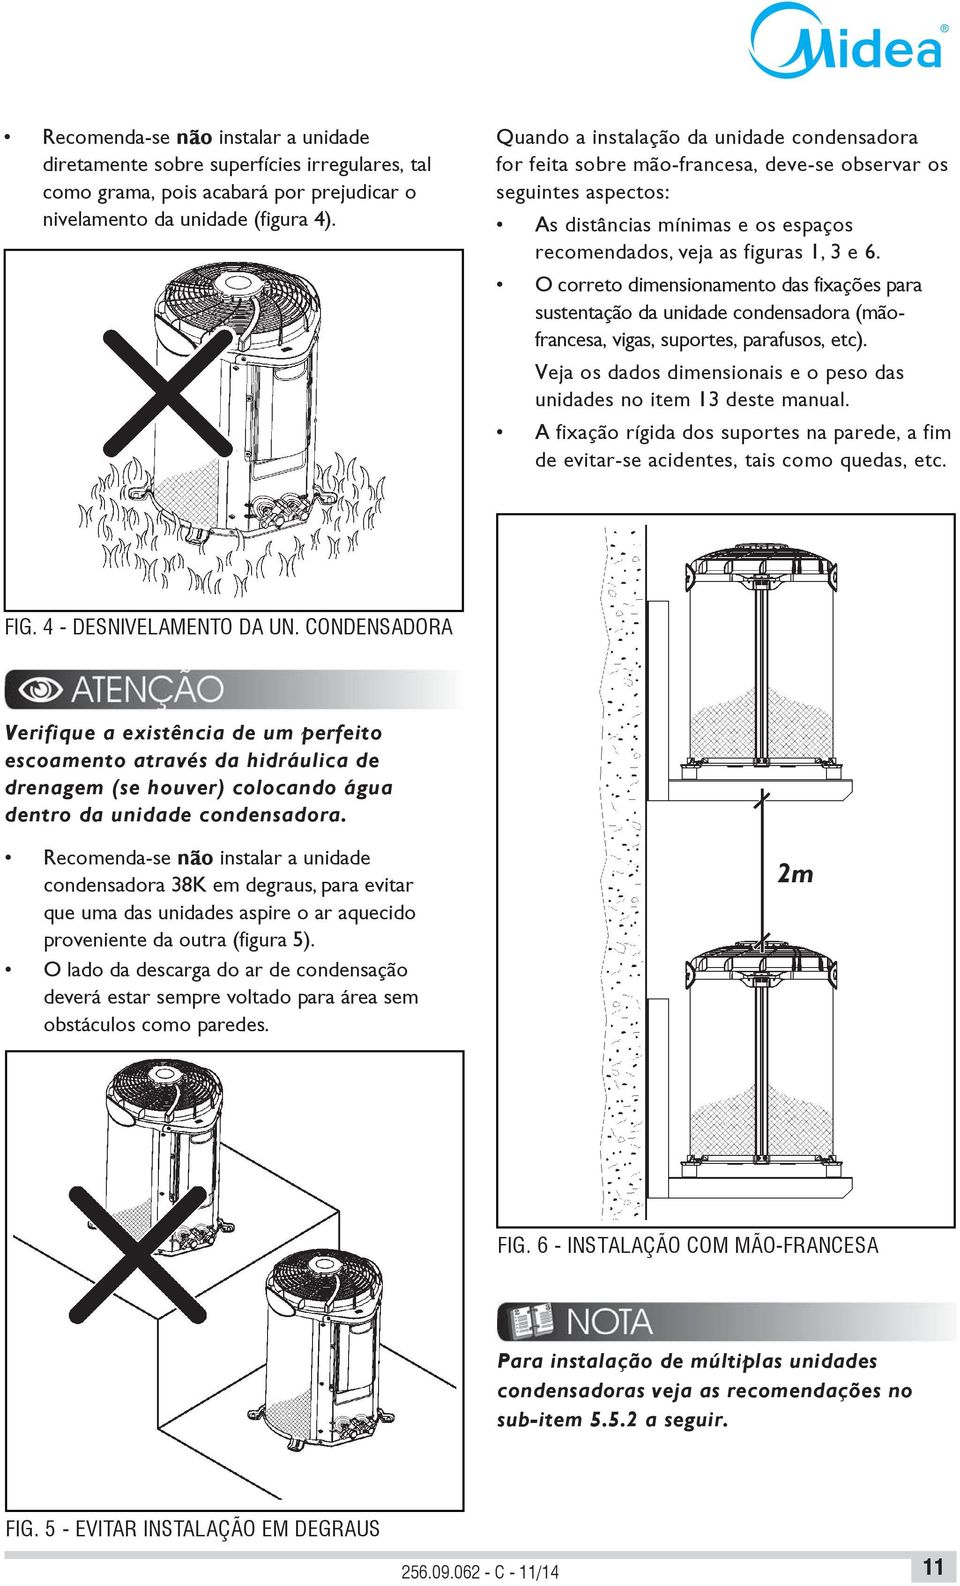 O correto dimensionamento das fixações para sustentação da unidade condensadora (mãofrancesa, vigas, suportes, parafusos, etc).